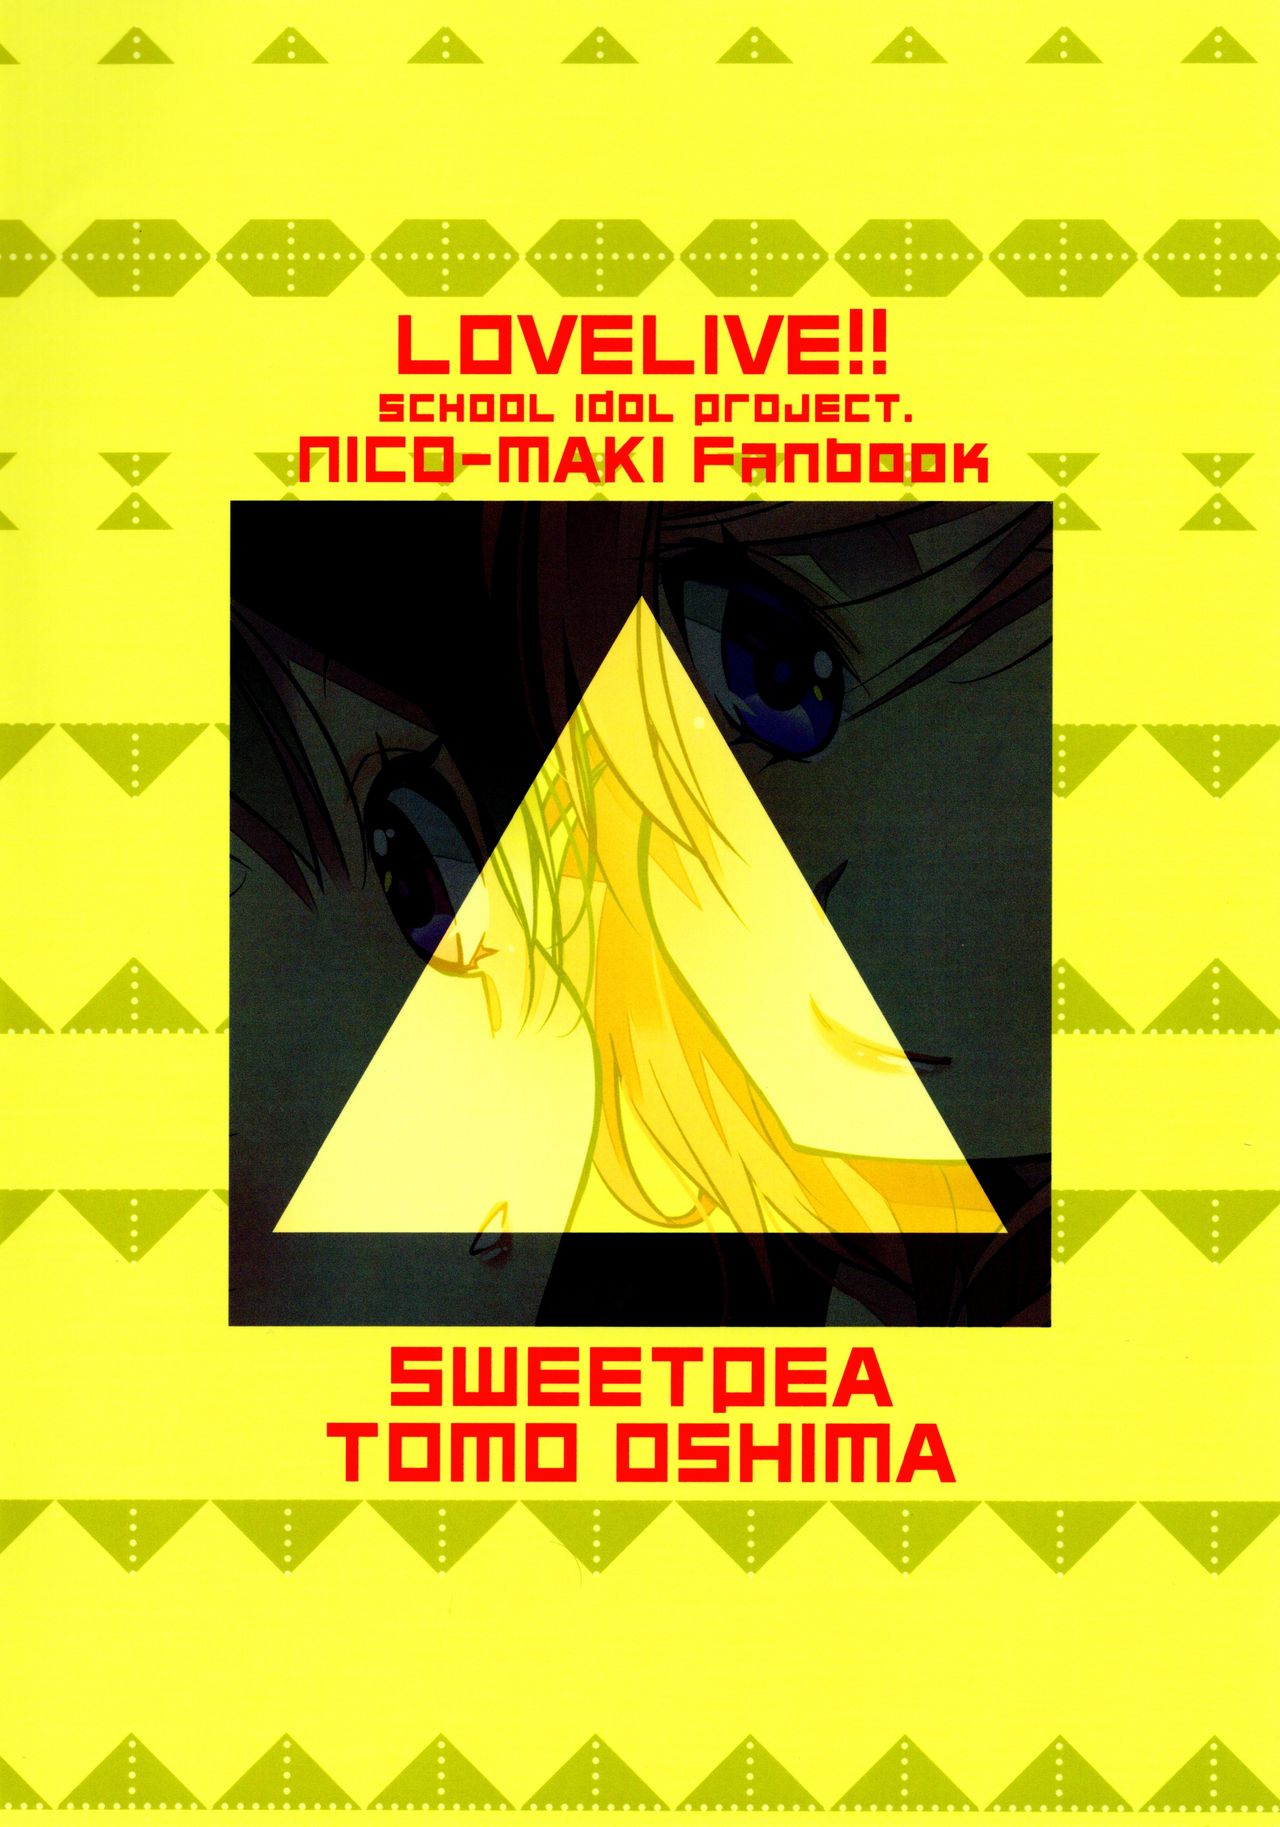 (Bokura no Love Live! 11) [Sweet Pea (Ooshima Tomo)] NicoMaki Triangle (Love Live!) (僕らのラブライブ! 11) [スイートピー (大島智)] にこまきトライアングル (ラブライブ!)